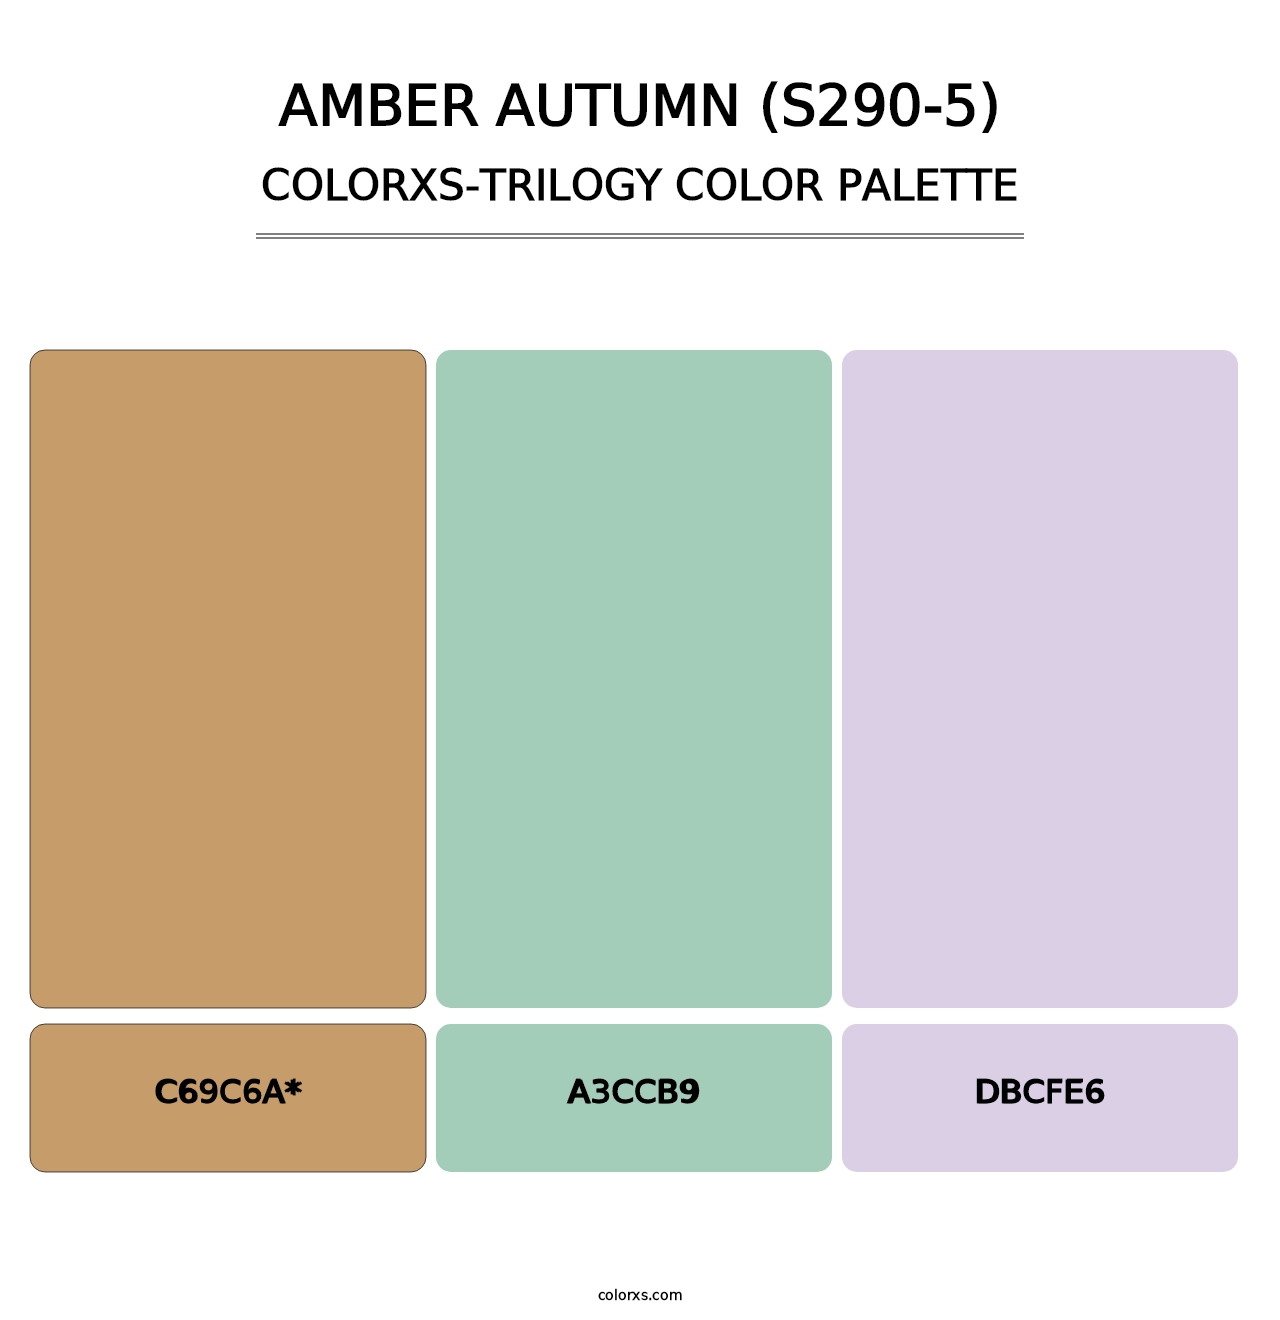 Amber Autumn (S290-5) - Colorxs Trilogy Palette